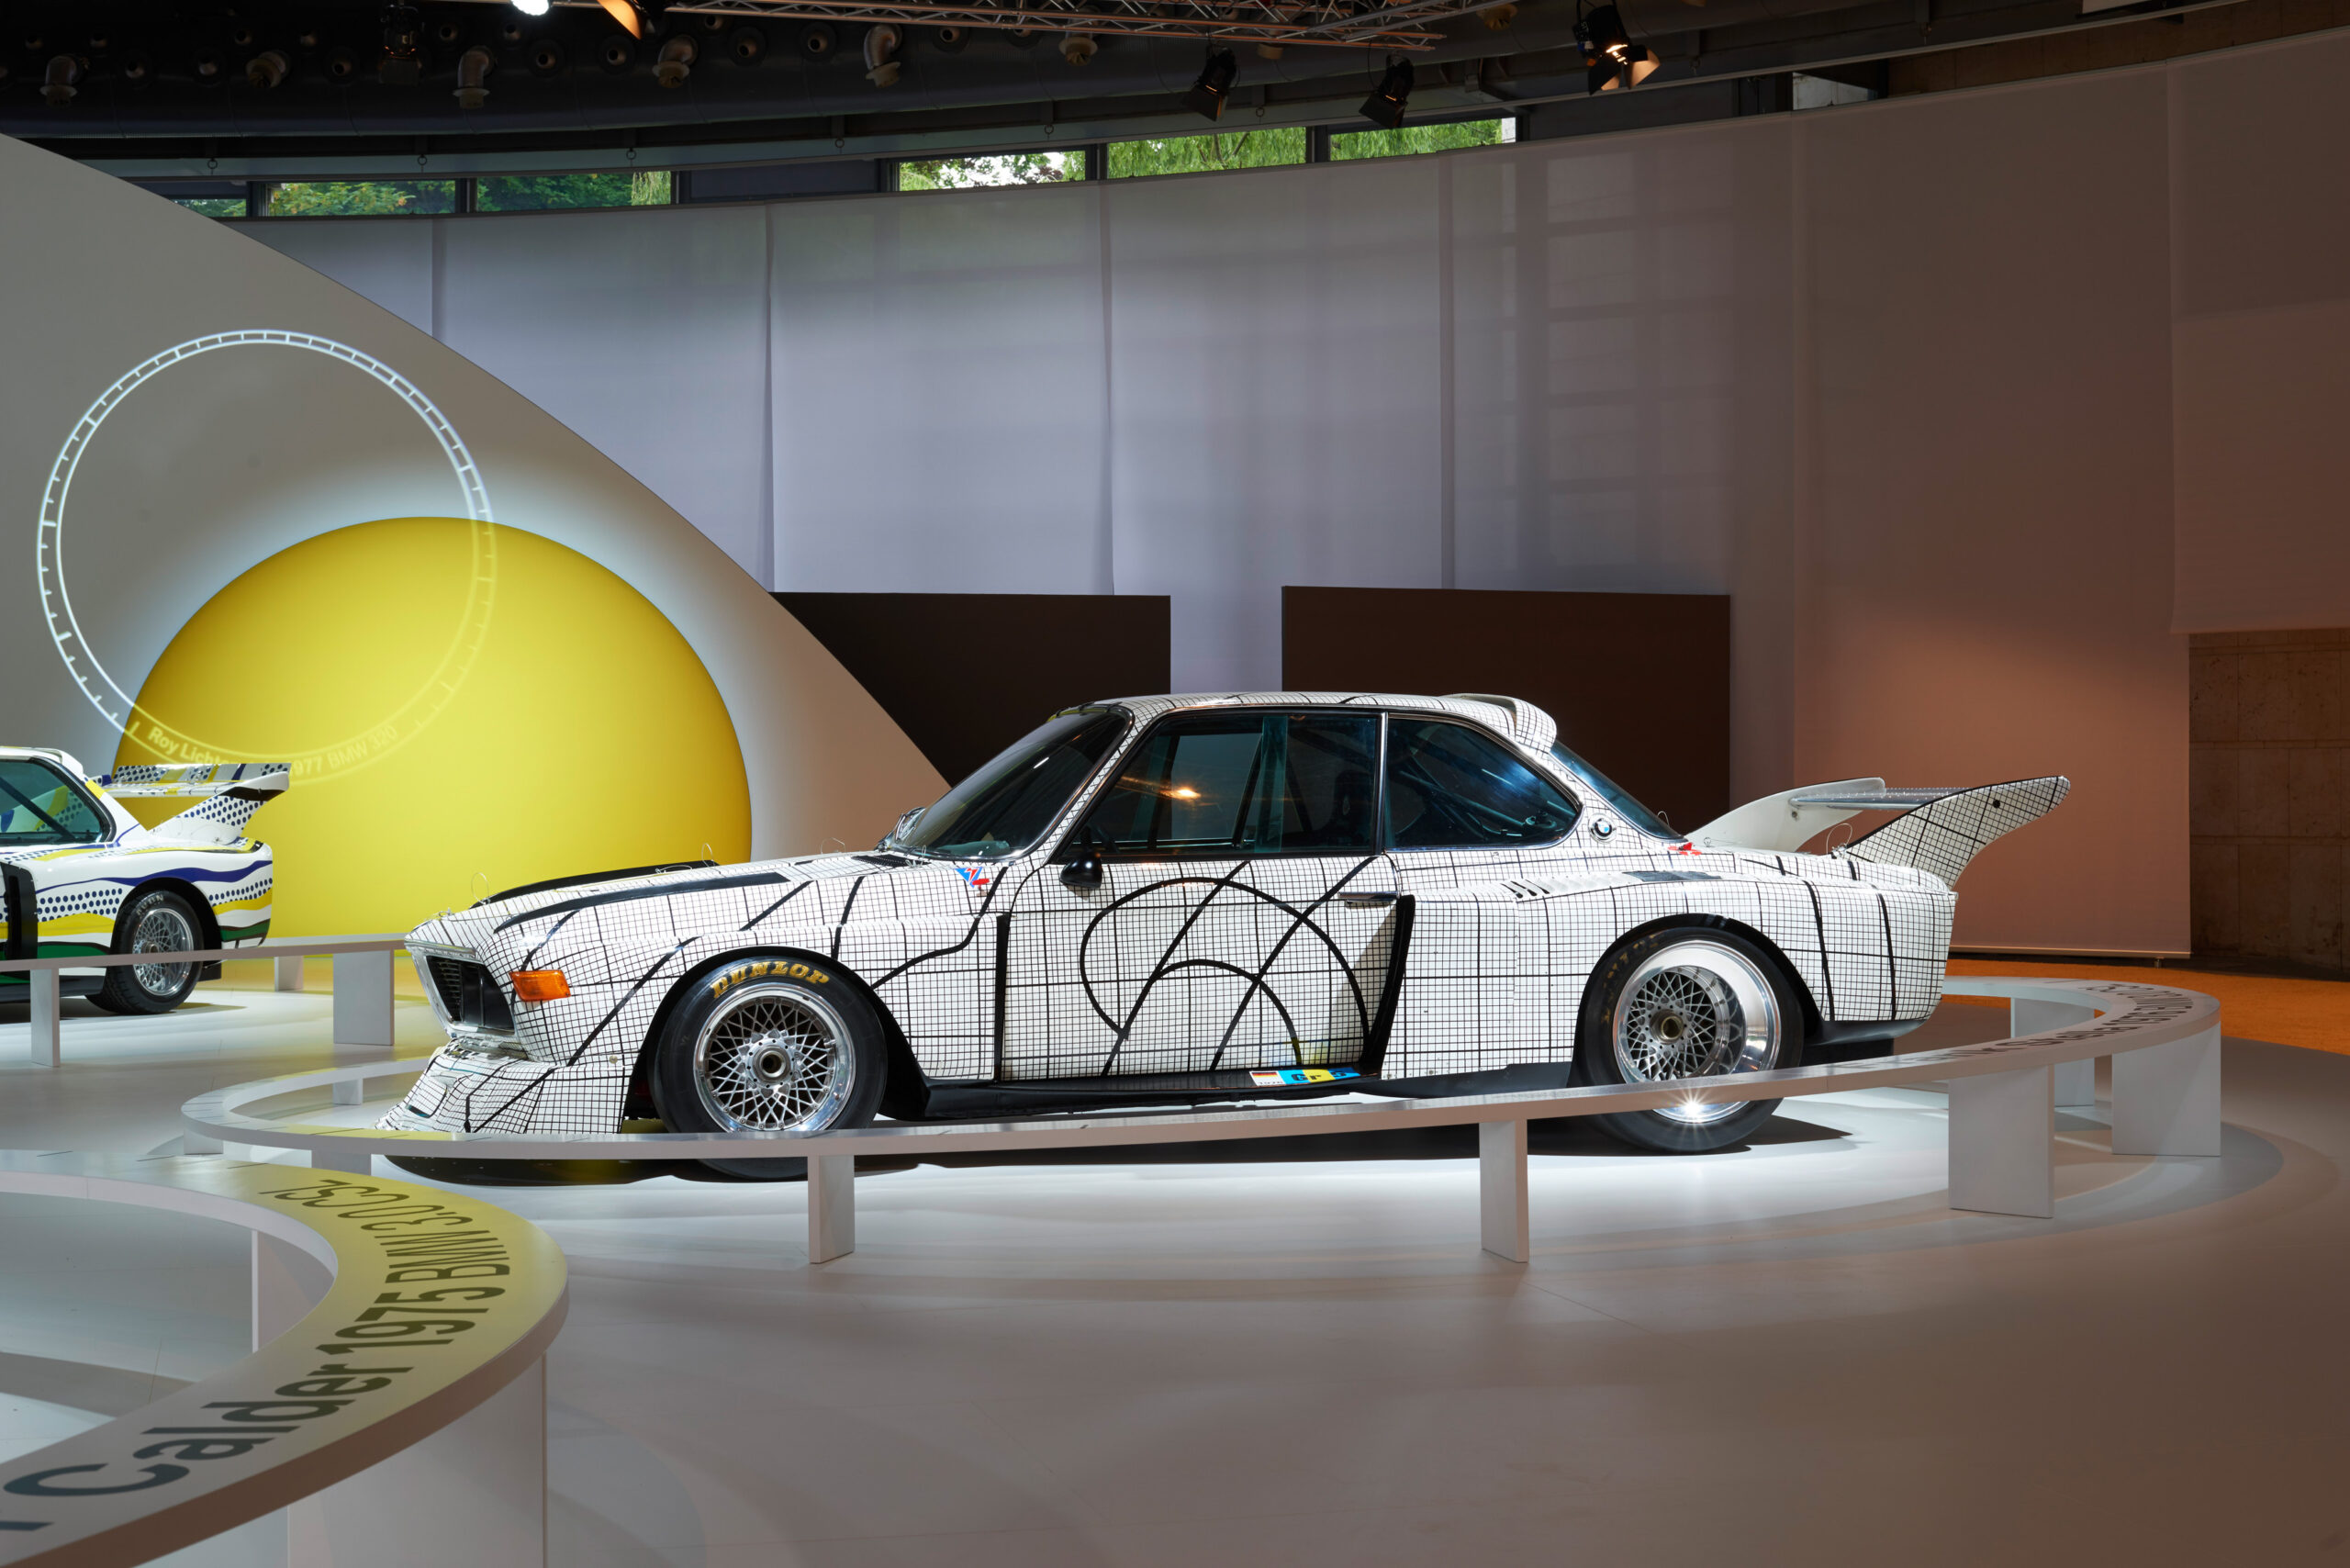 Frank Stella BMW art car on display